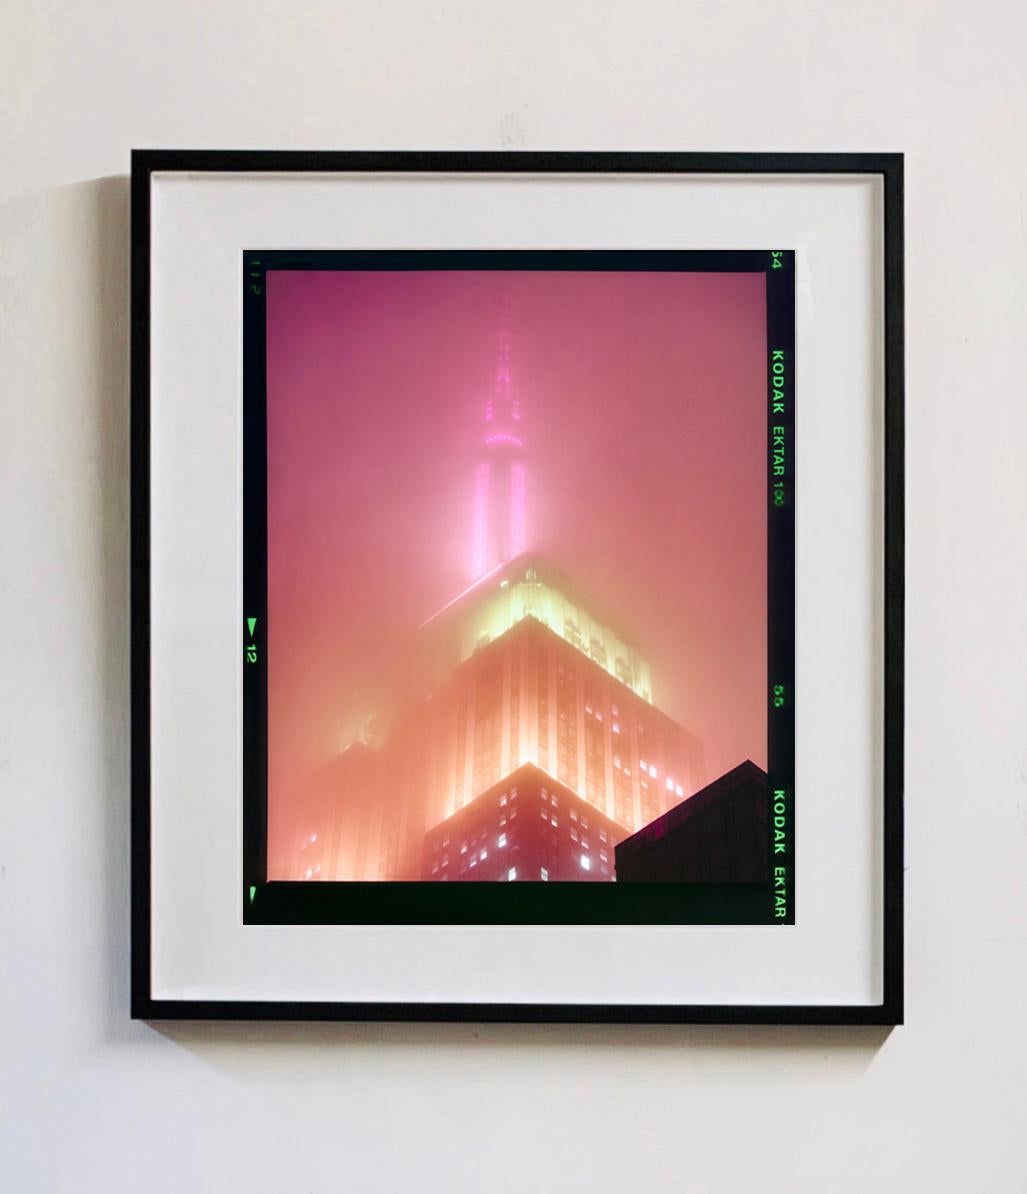 Ensemble de quatre œuvres d'art encadrées.
nOMAD (Film Rebate), New York. Richard Heeps a photographié l'emblématique Empire State Building dans la brume. La séquence de photographies NOMAD capture l'architecture art déco illuminée par des couleurs